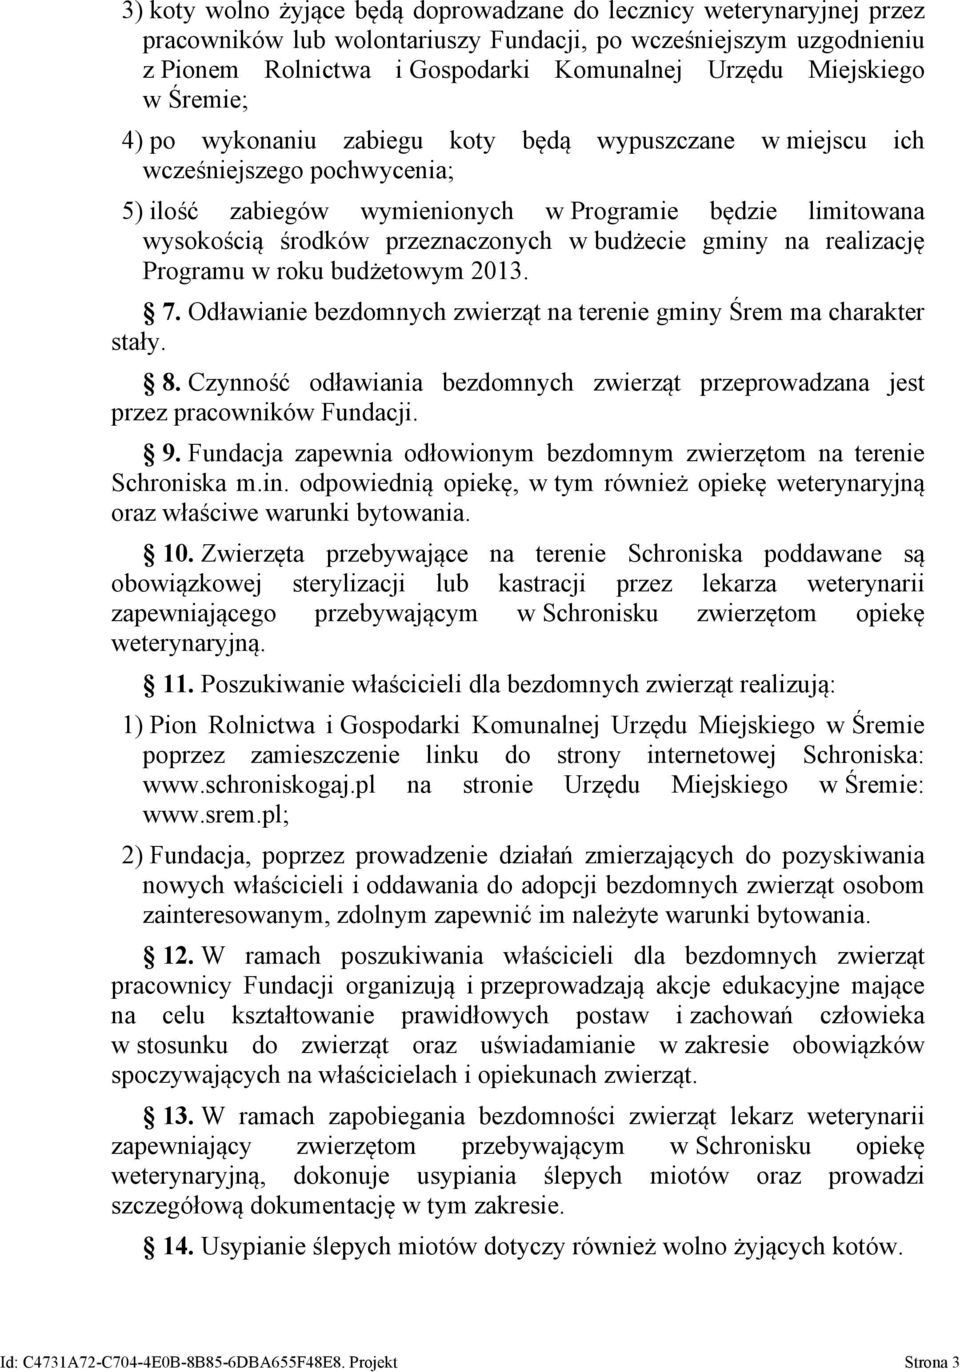 przeznaczonych w budżecie gminy na realizację Programu w roku budżetowym 2013. 7. Odławianie bezdomnych zwierząt na terenie gminy Śrem ma charakter stały. 8.